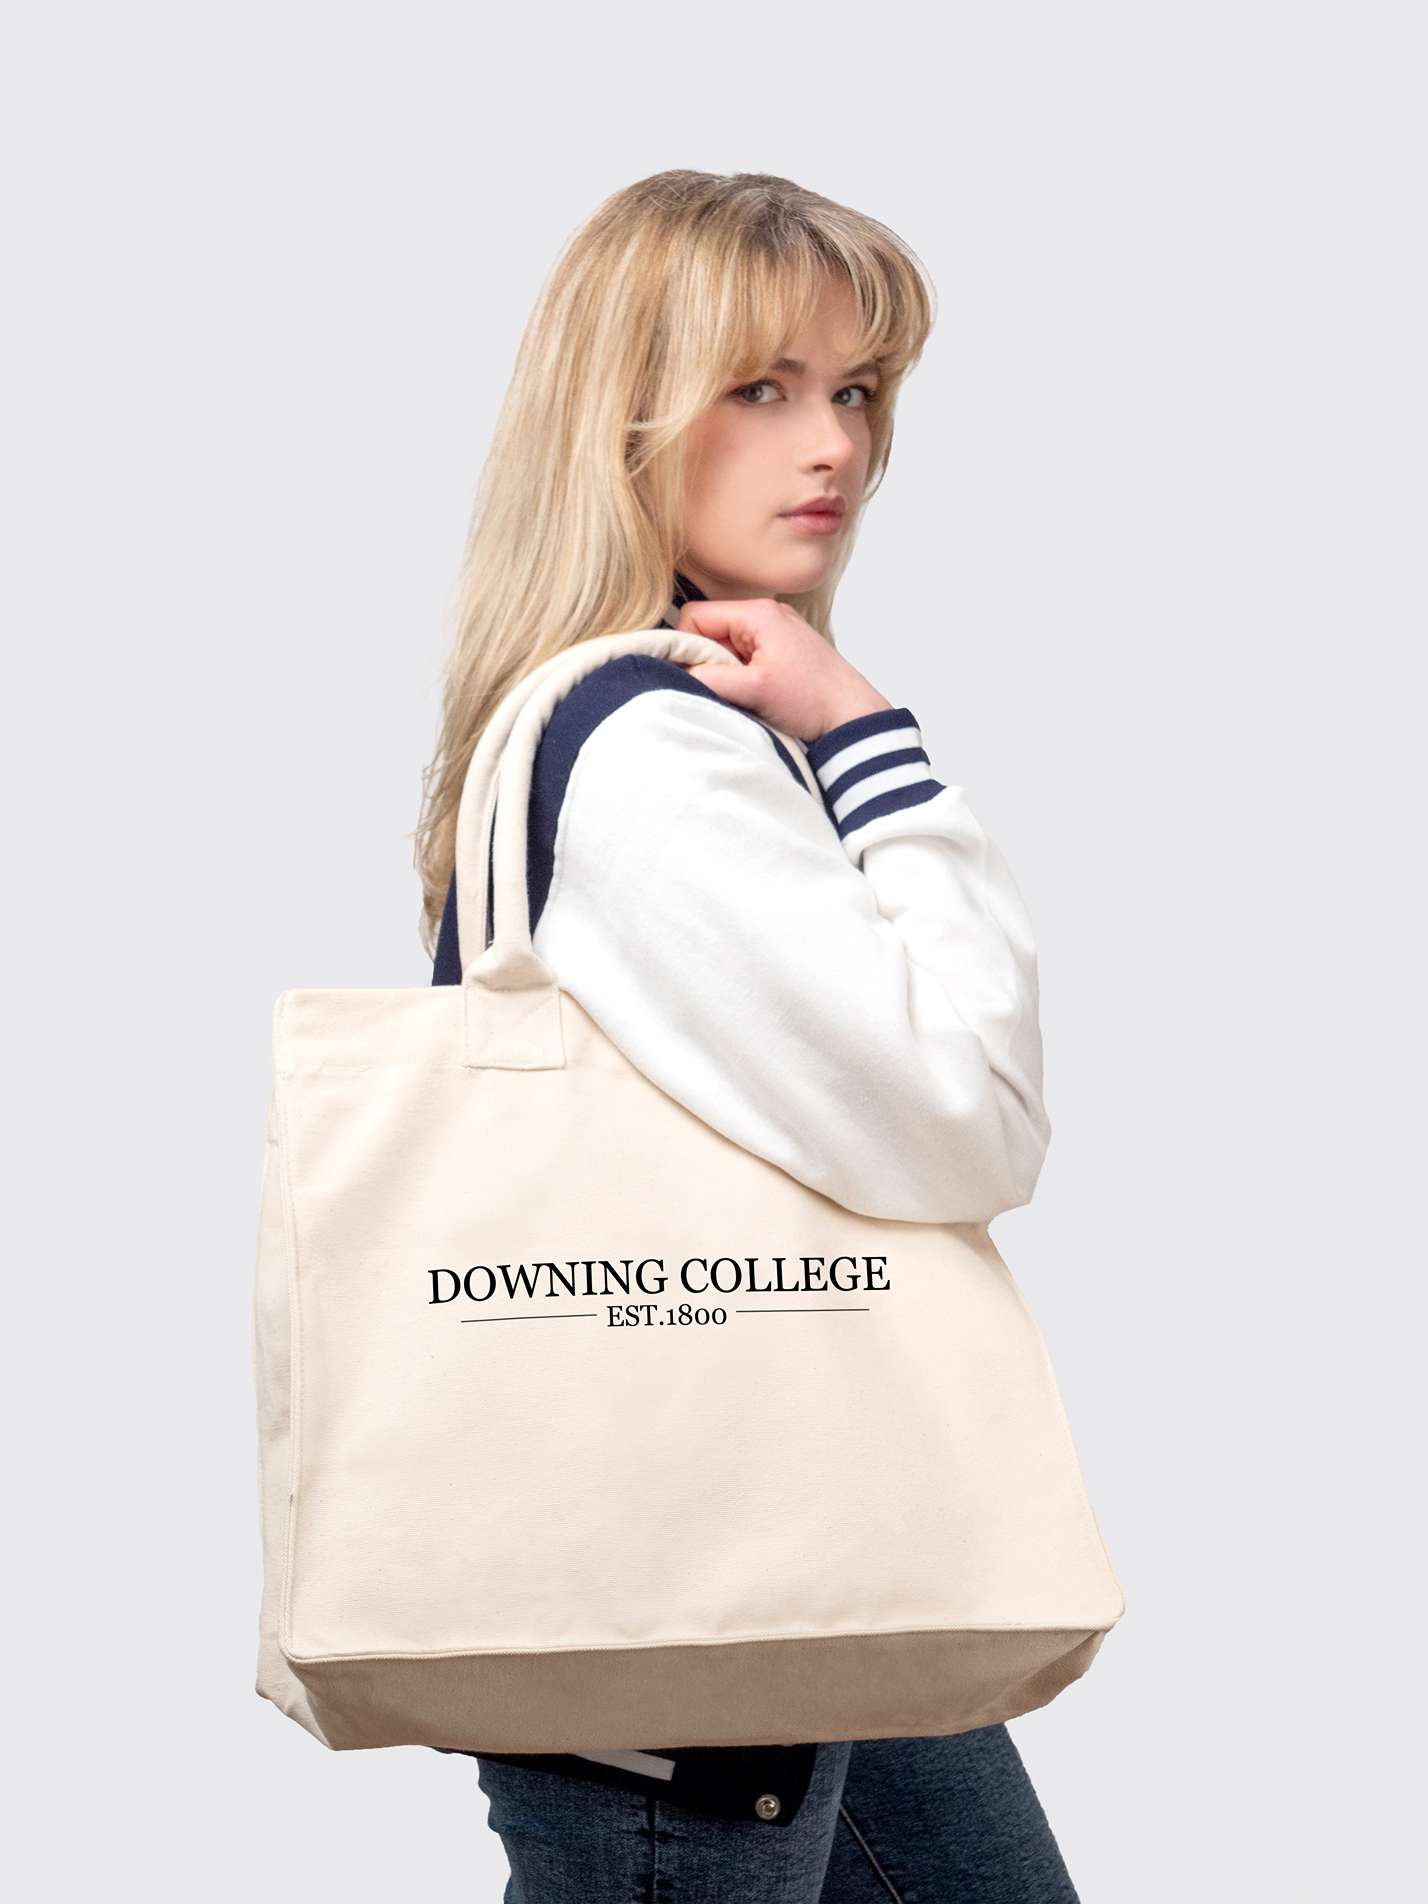 Downing College Cambridge JCR Cotton Canvas Shopper